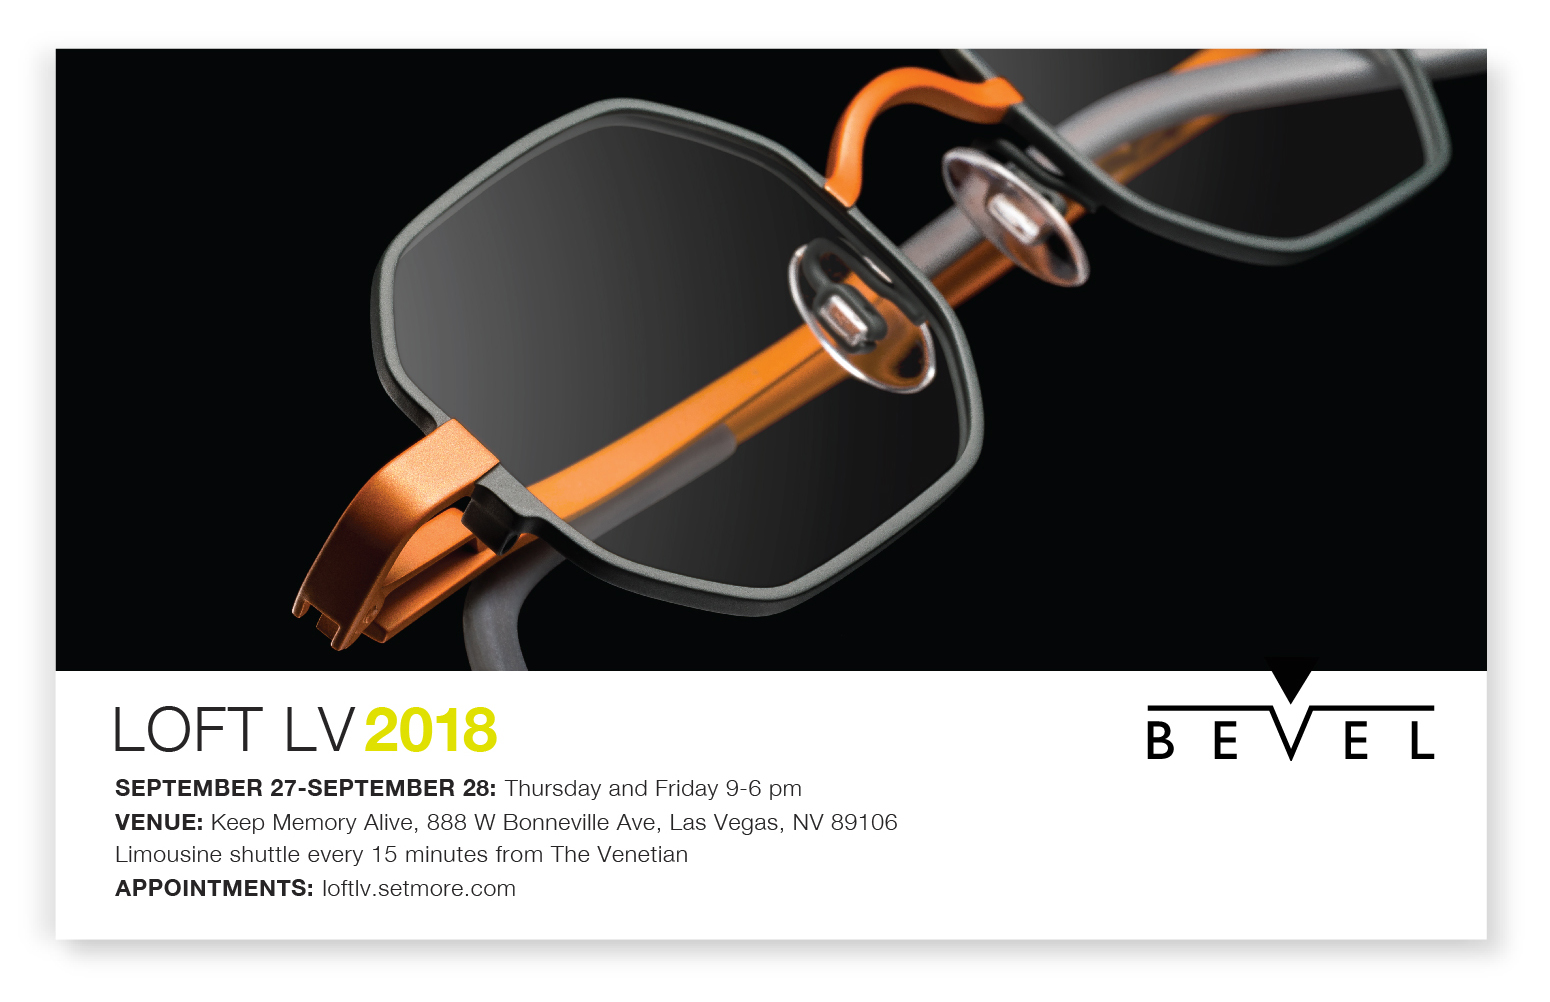 Bevel Loft LV 2018